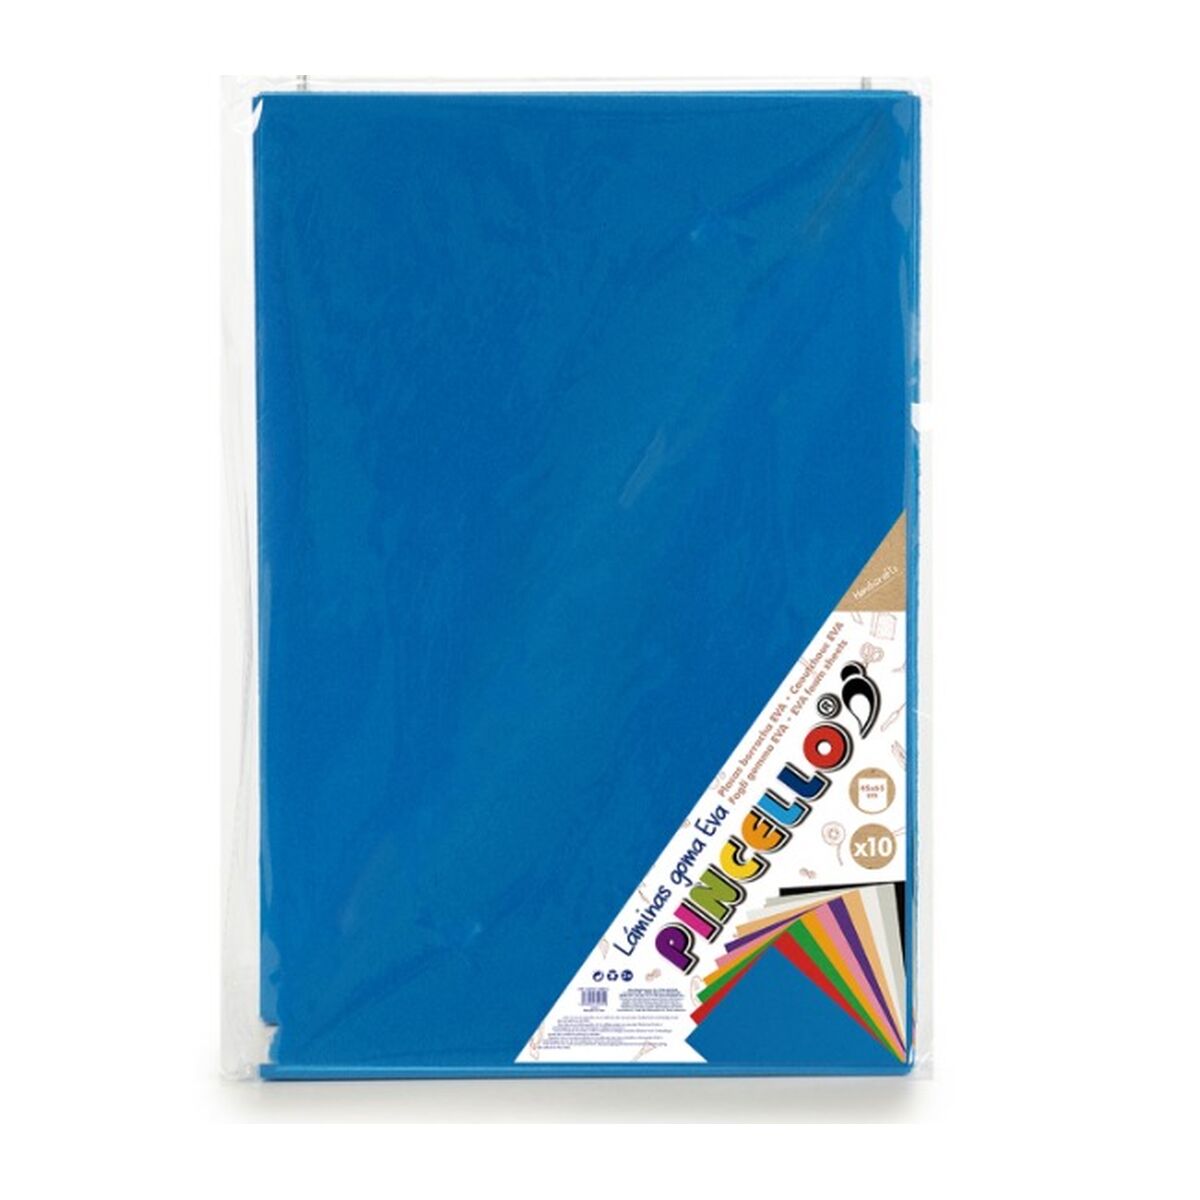 Eva-gummi Mörkblå 65 x 0,2 x 45 cm (12 antal)-Kontor och Kontorsmaterial, Pappersprodukter för kontoret-Pincello-peaceofhome.se